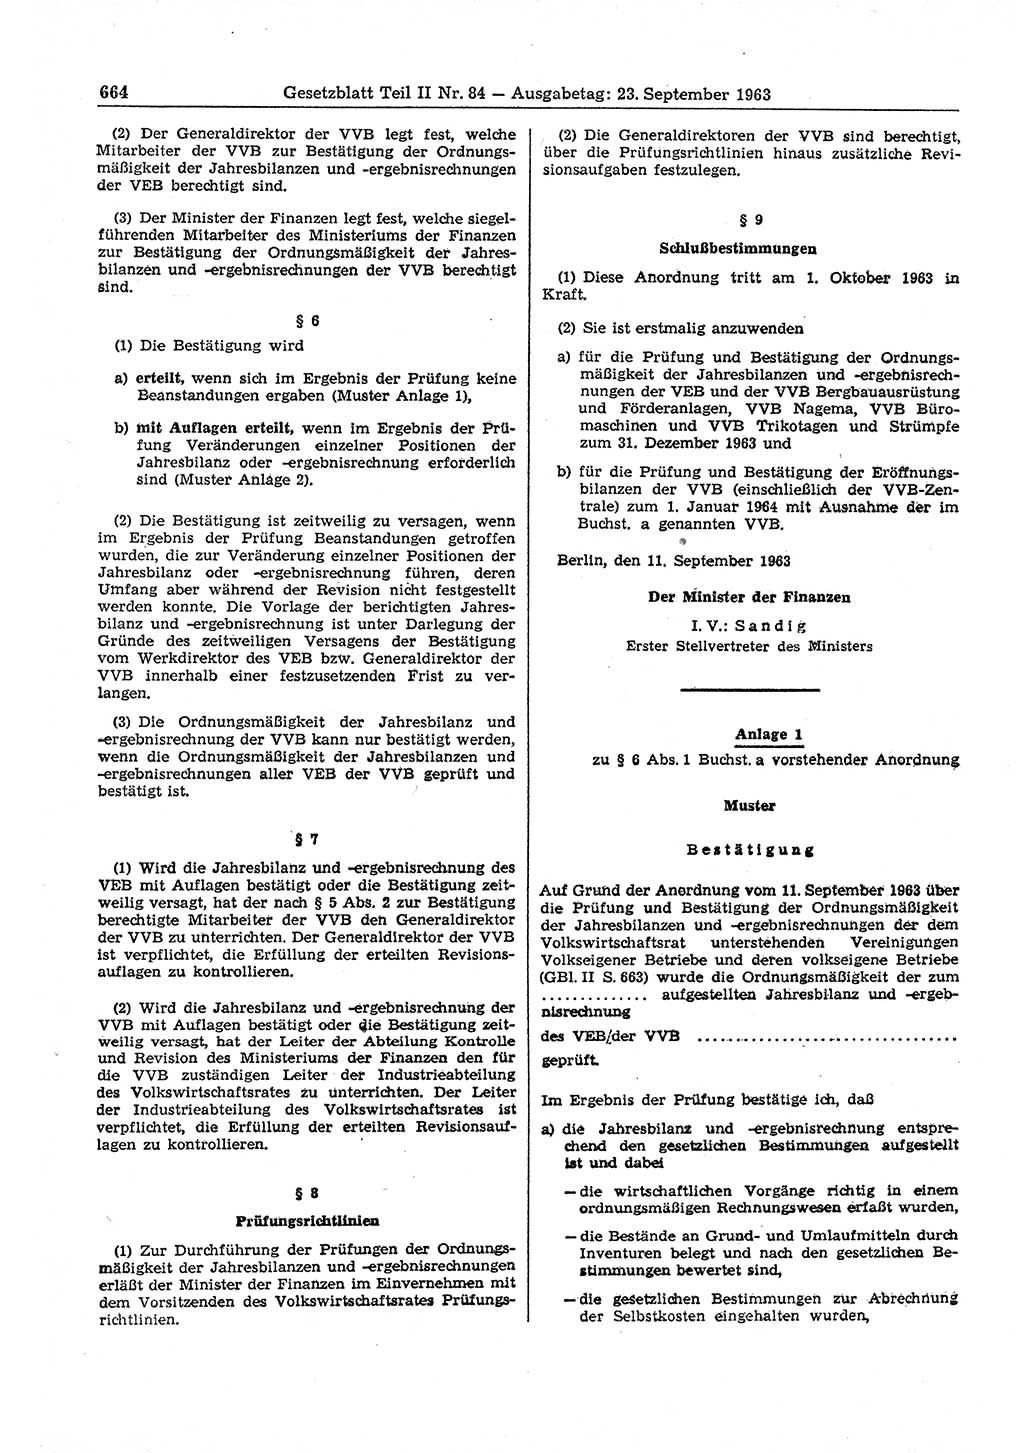 Gesetzblatt (GBl.) der Deutschen Demokratischen Republik (DDR) Teil ⅠⅠ 1963, Seite 664 (GBl. DDR ⅠⅠ 1963, S. 664)